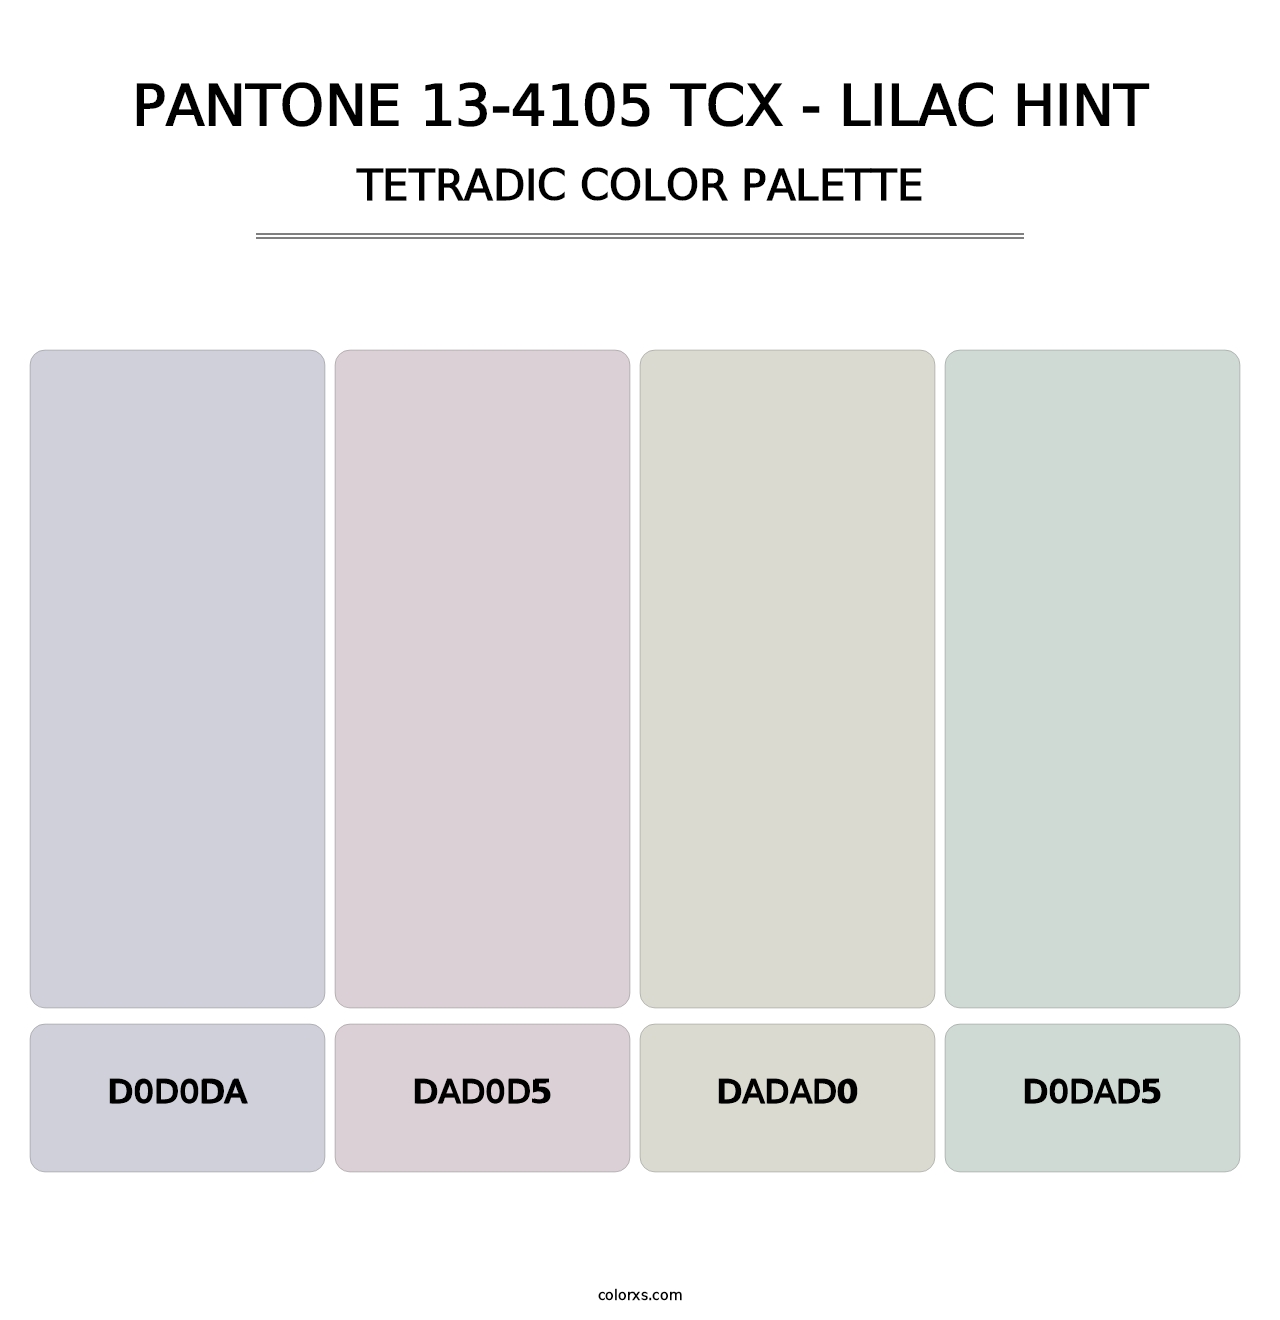 PANTONE 13-4105 TCX - Lilac Hint - Tetradic Color Palette